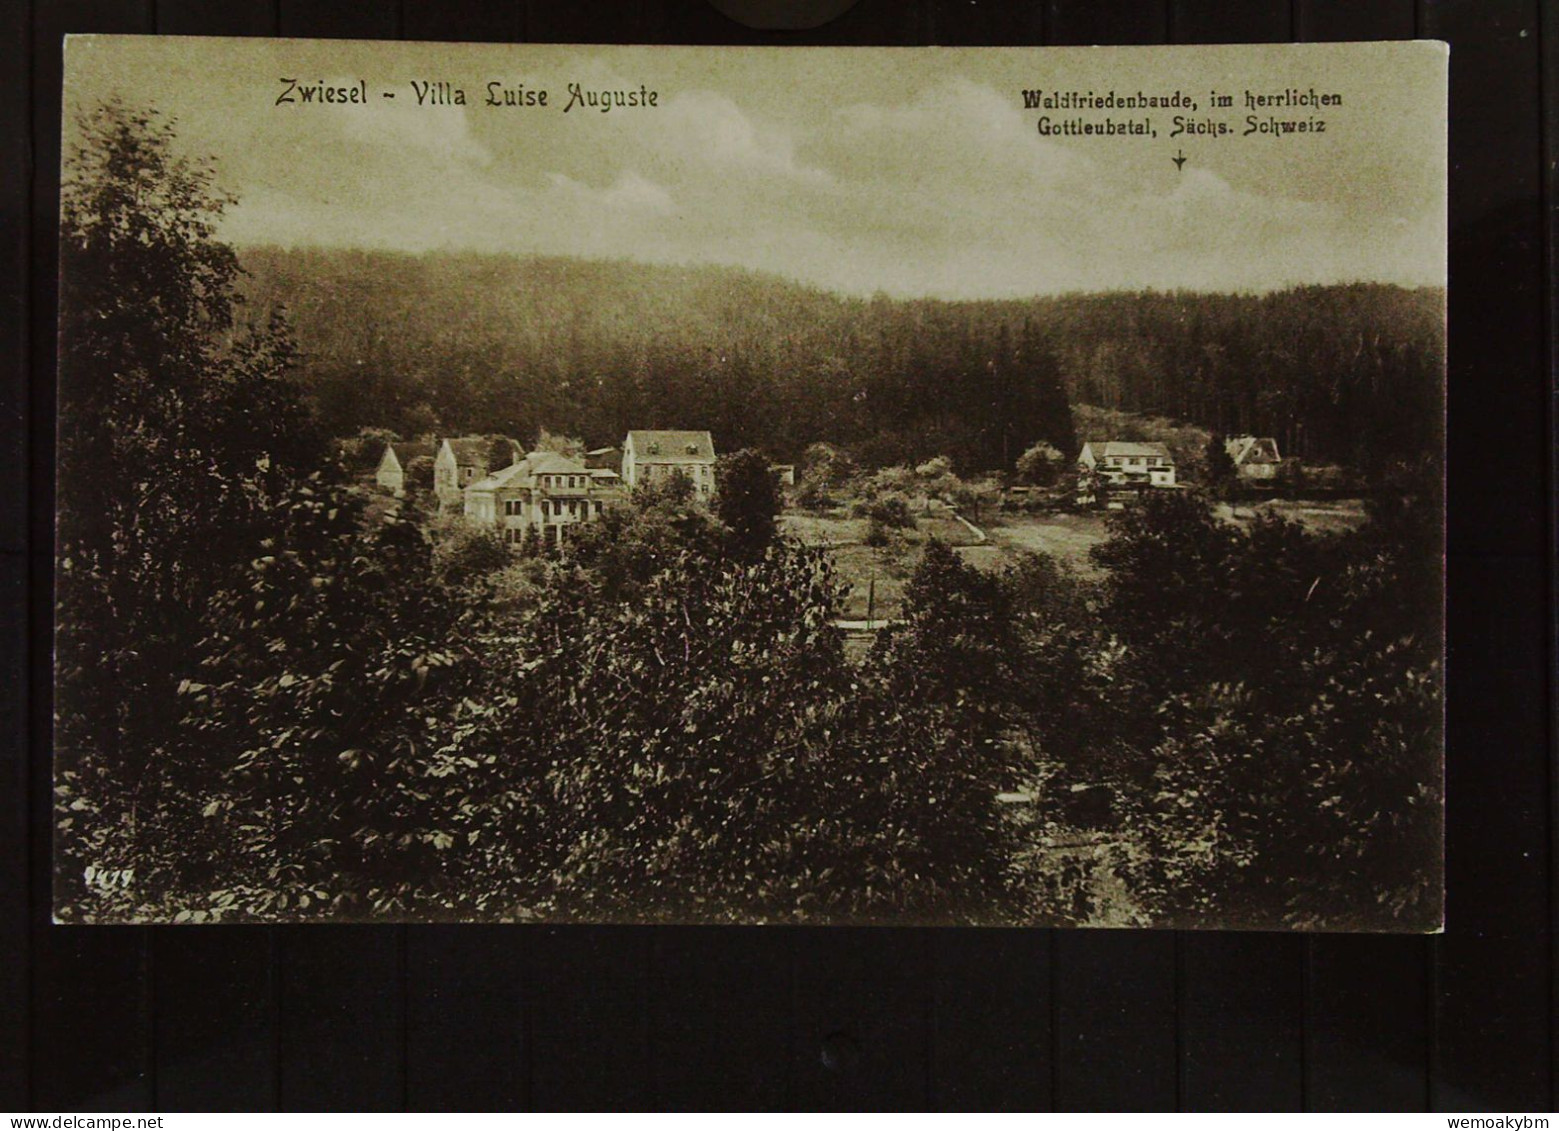 AK Von Zwiesel (Sachsen) Mit Villa "Luise Auguste"  Waldfiedensbaude, Im Herrlichen Gottleubatal -nicht Gelaufen Um 1930 - Bad Gottleuba-Berggiesshuebel